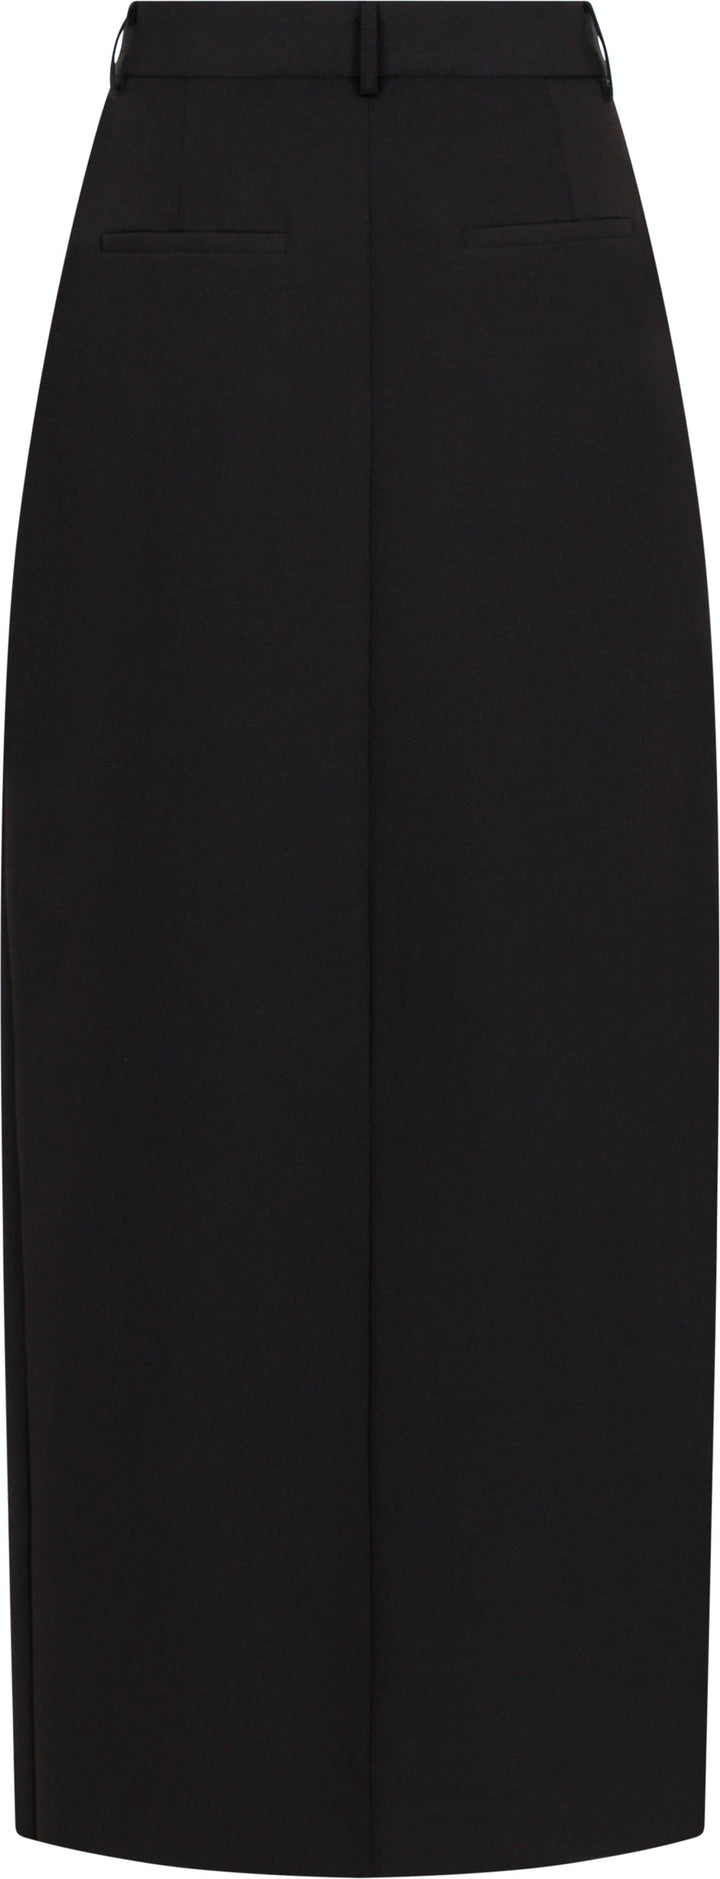 Neo Noir - Leland Suit Skirt - Black